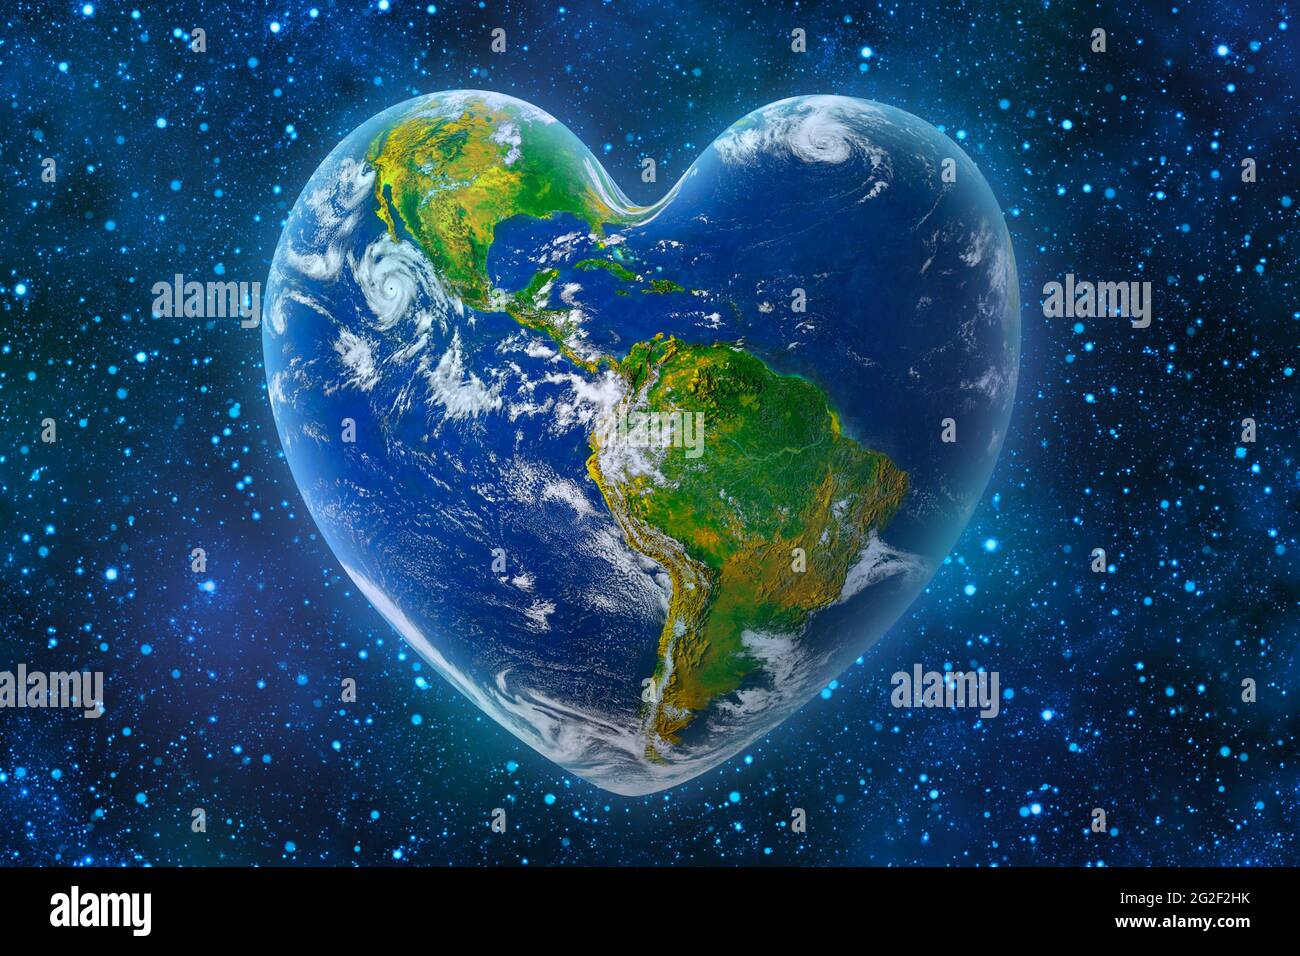 Erde in Form eines Herz-, Ökologie- und Umweltkonzepts - Elemente dieses Bildes, das von der NASA eingerichtet wurde. Stockfoto